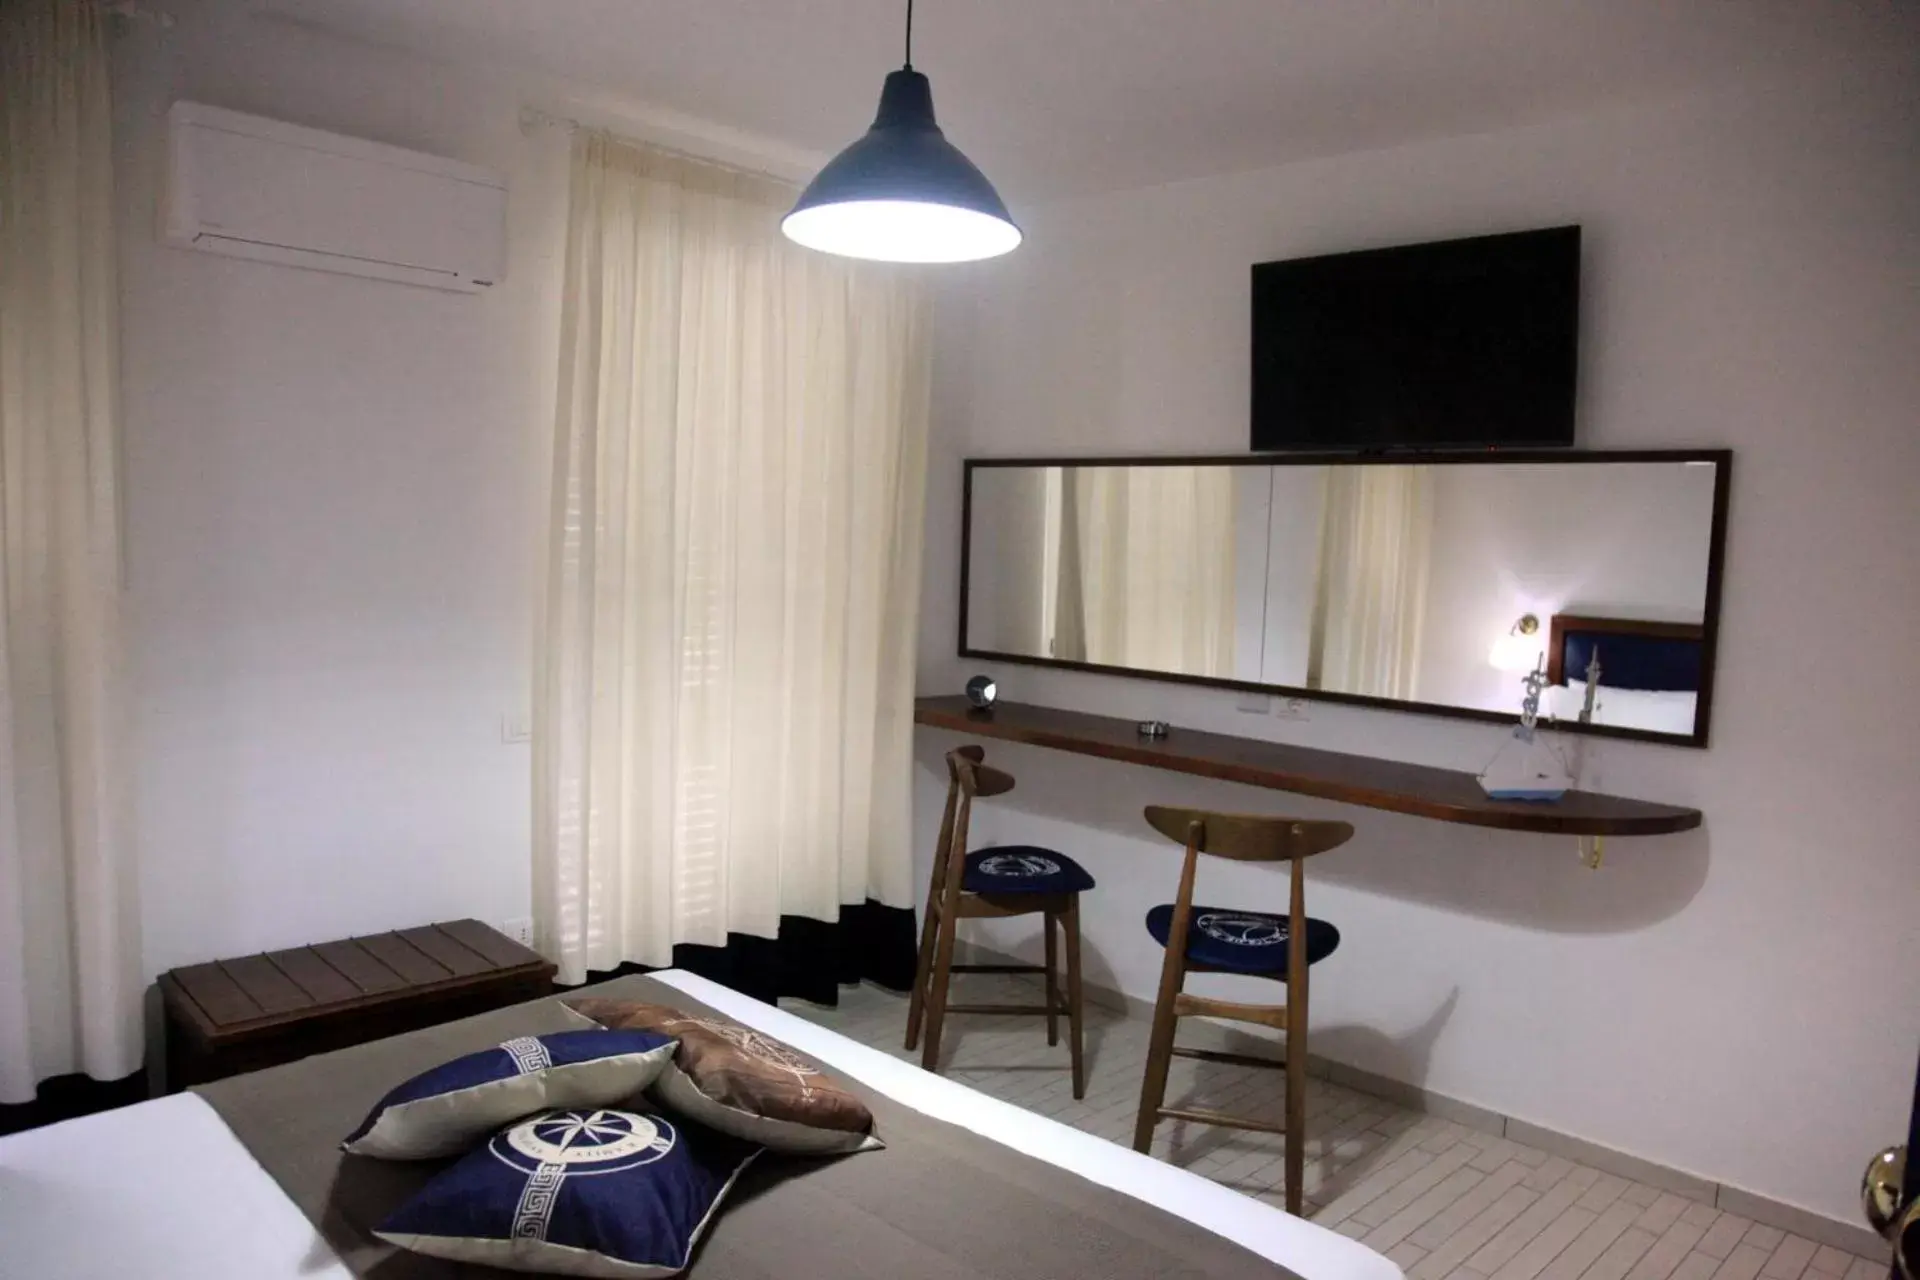 Bedroom, TV/Entertainment Center in Le Tolde del Corallone